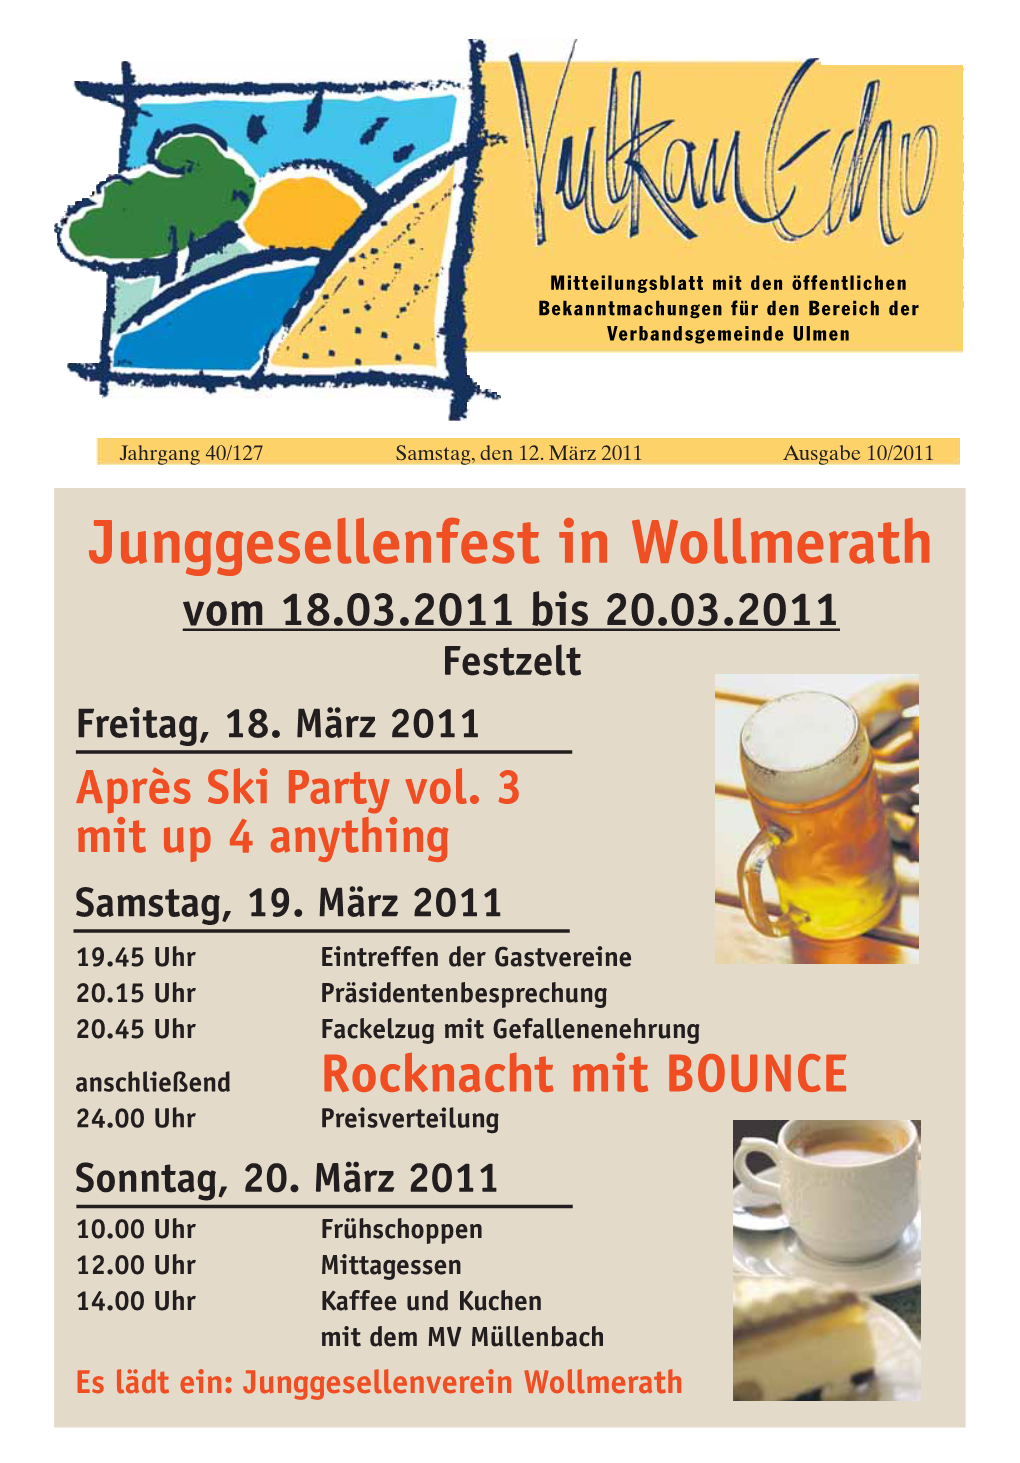 Junggesellenfest in Wollmerath Vom 18.03.2011 Bis 20.03.2011 Festzelt Freitag, 18